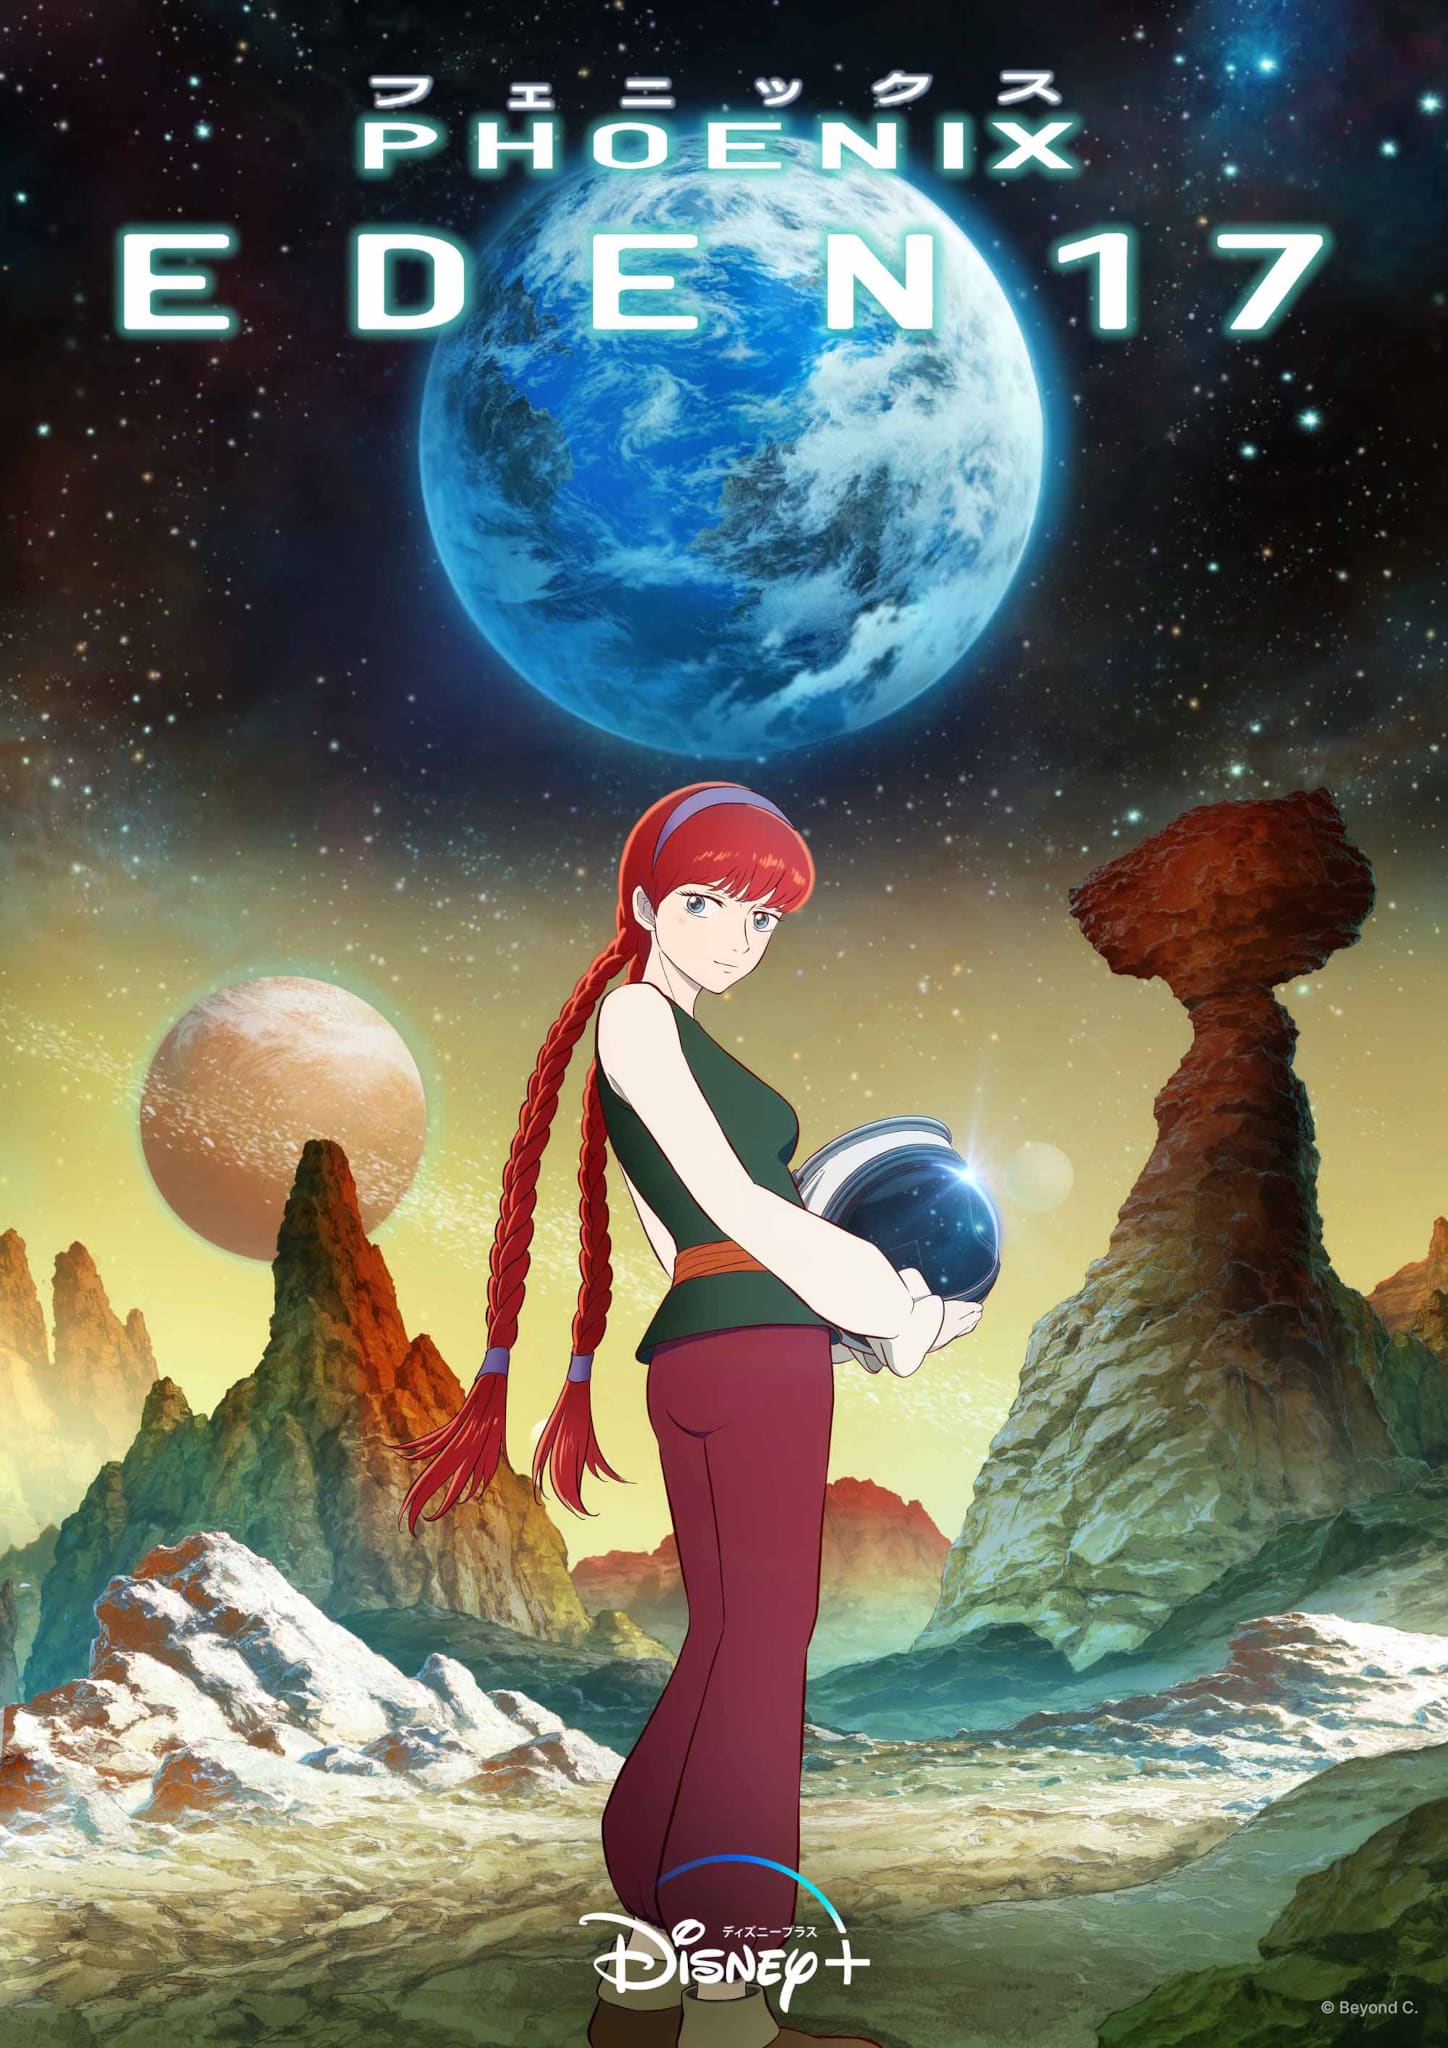 Second visuel pour lanime Phoenix : Eden17